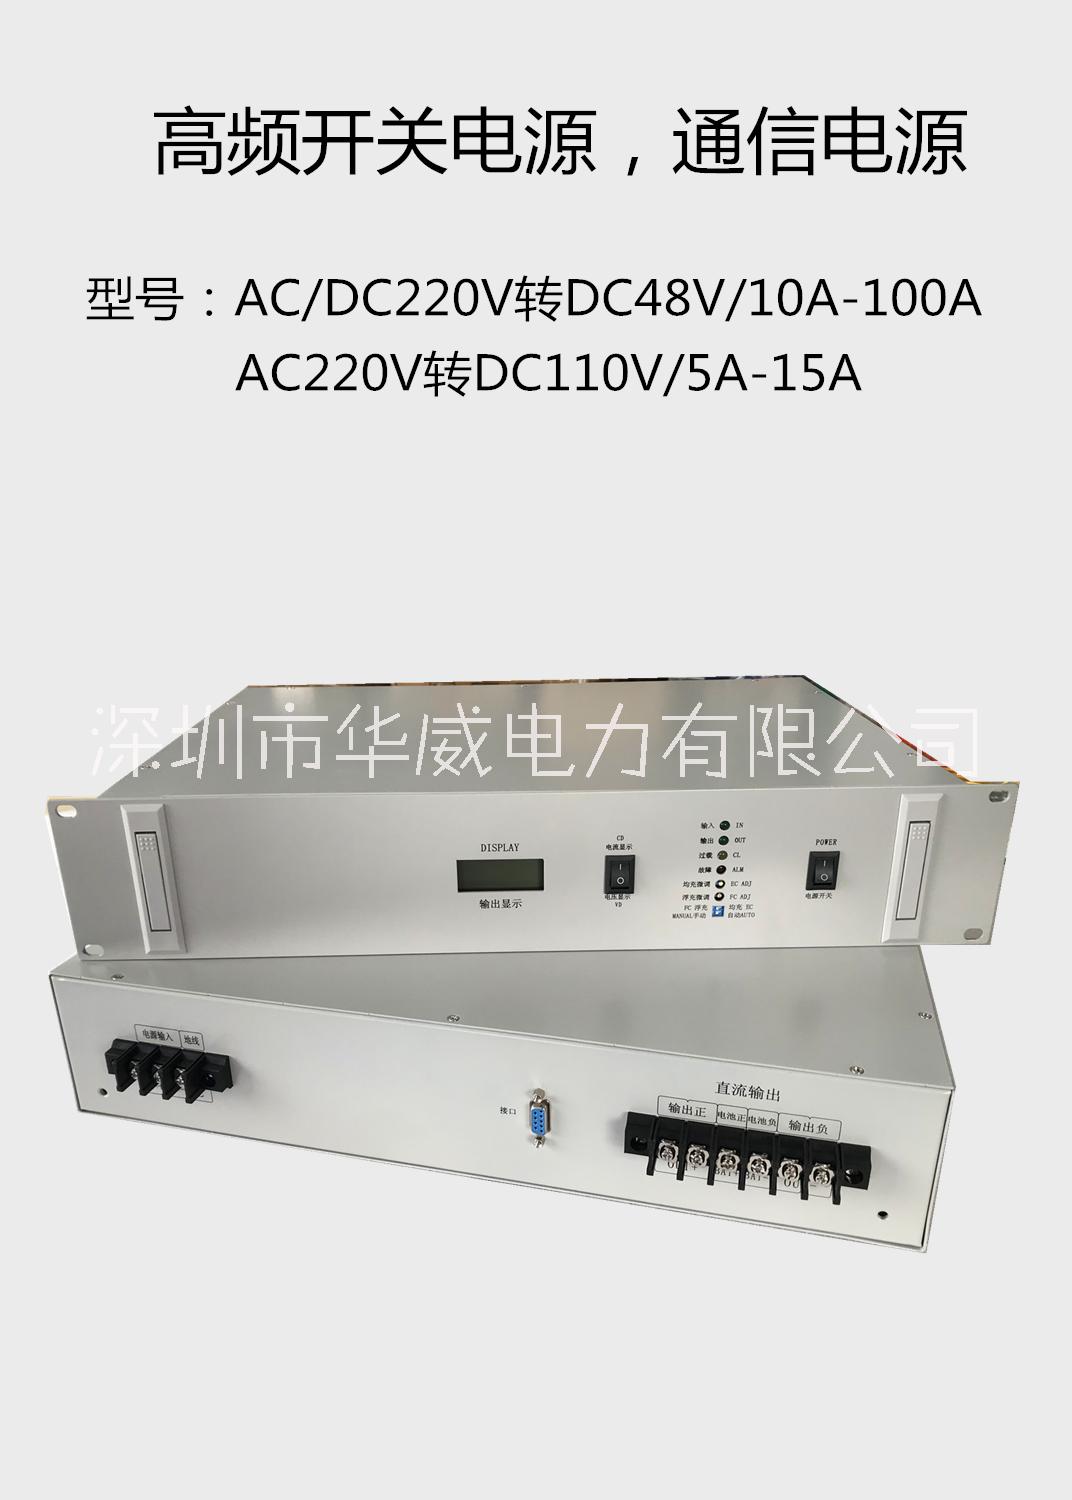 广州通信机房专用DC48V嵌入式通信电源图片